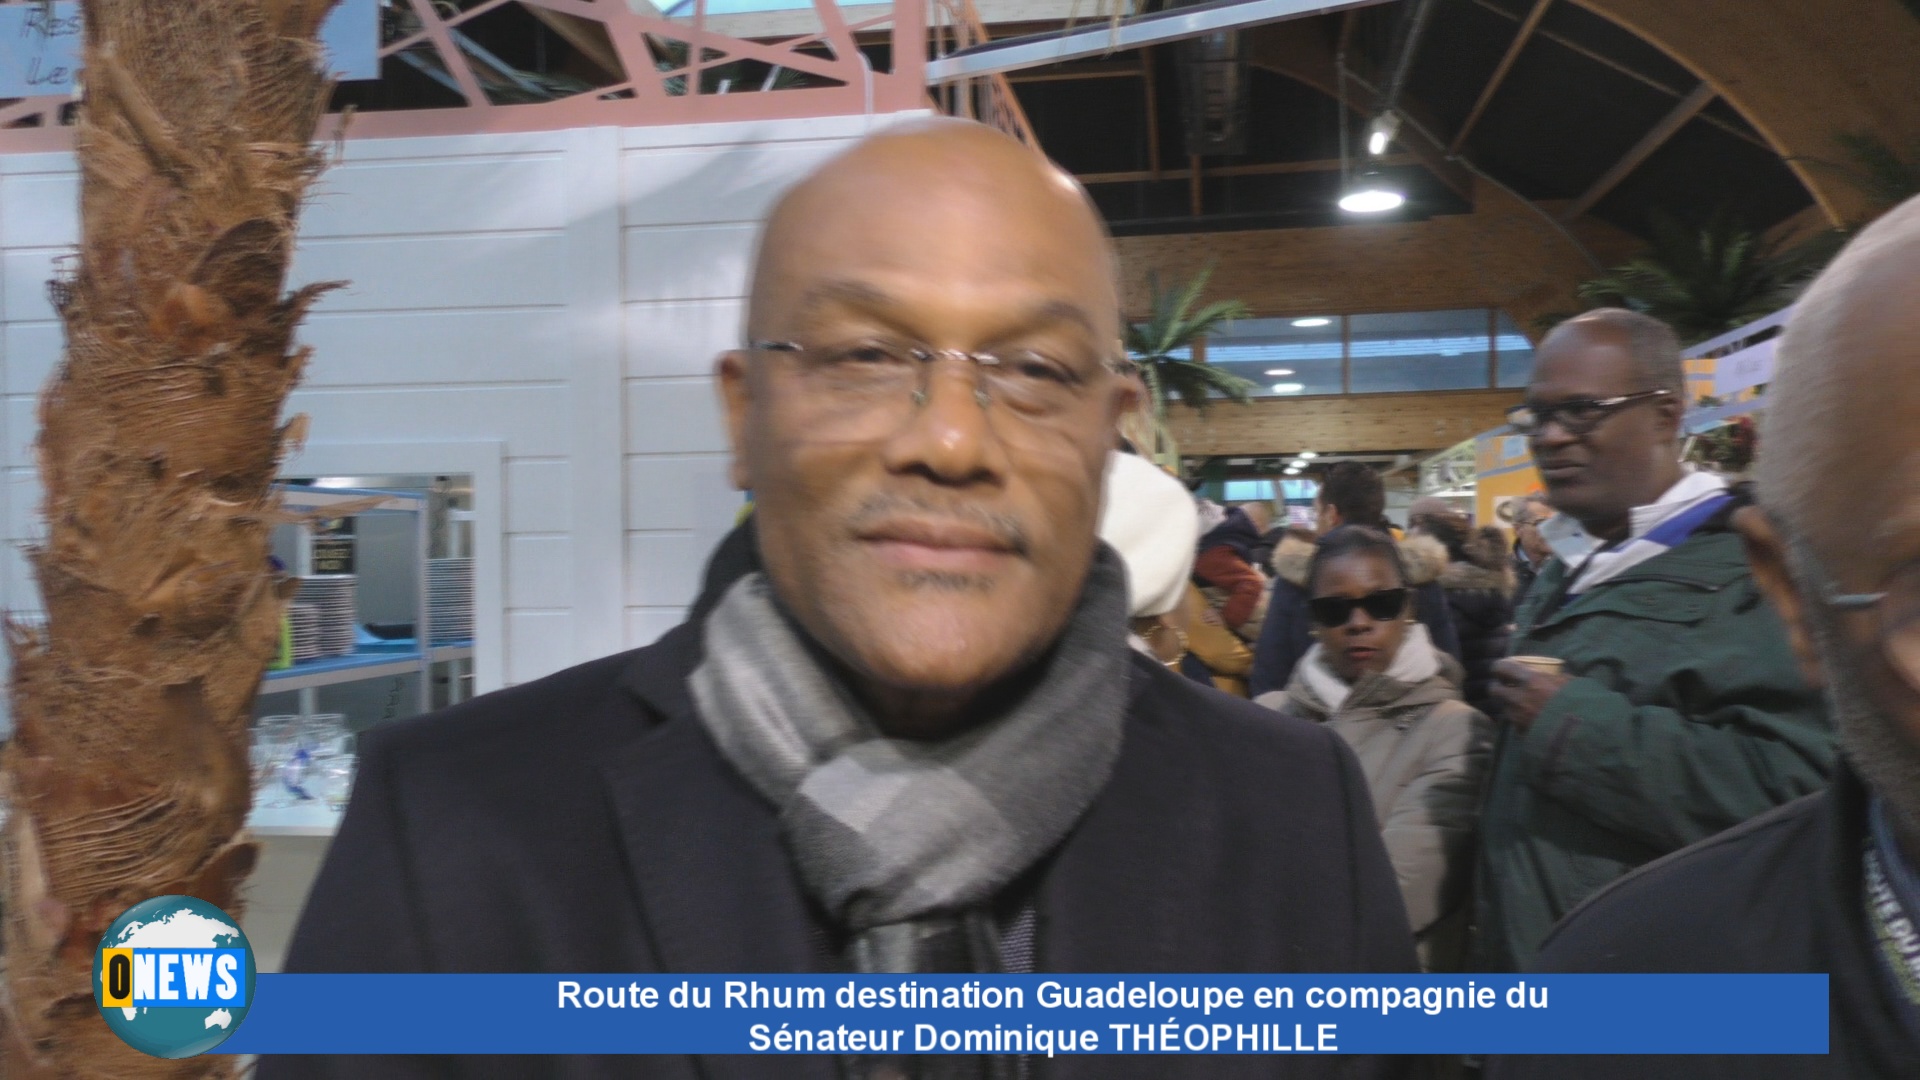 [Vidéo] Route du Rhum destination Guadeloupe en compagnie du Sénateur Dominique THÉOPHILLE